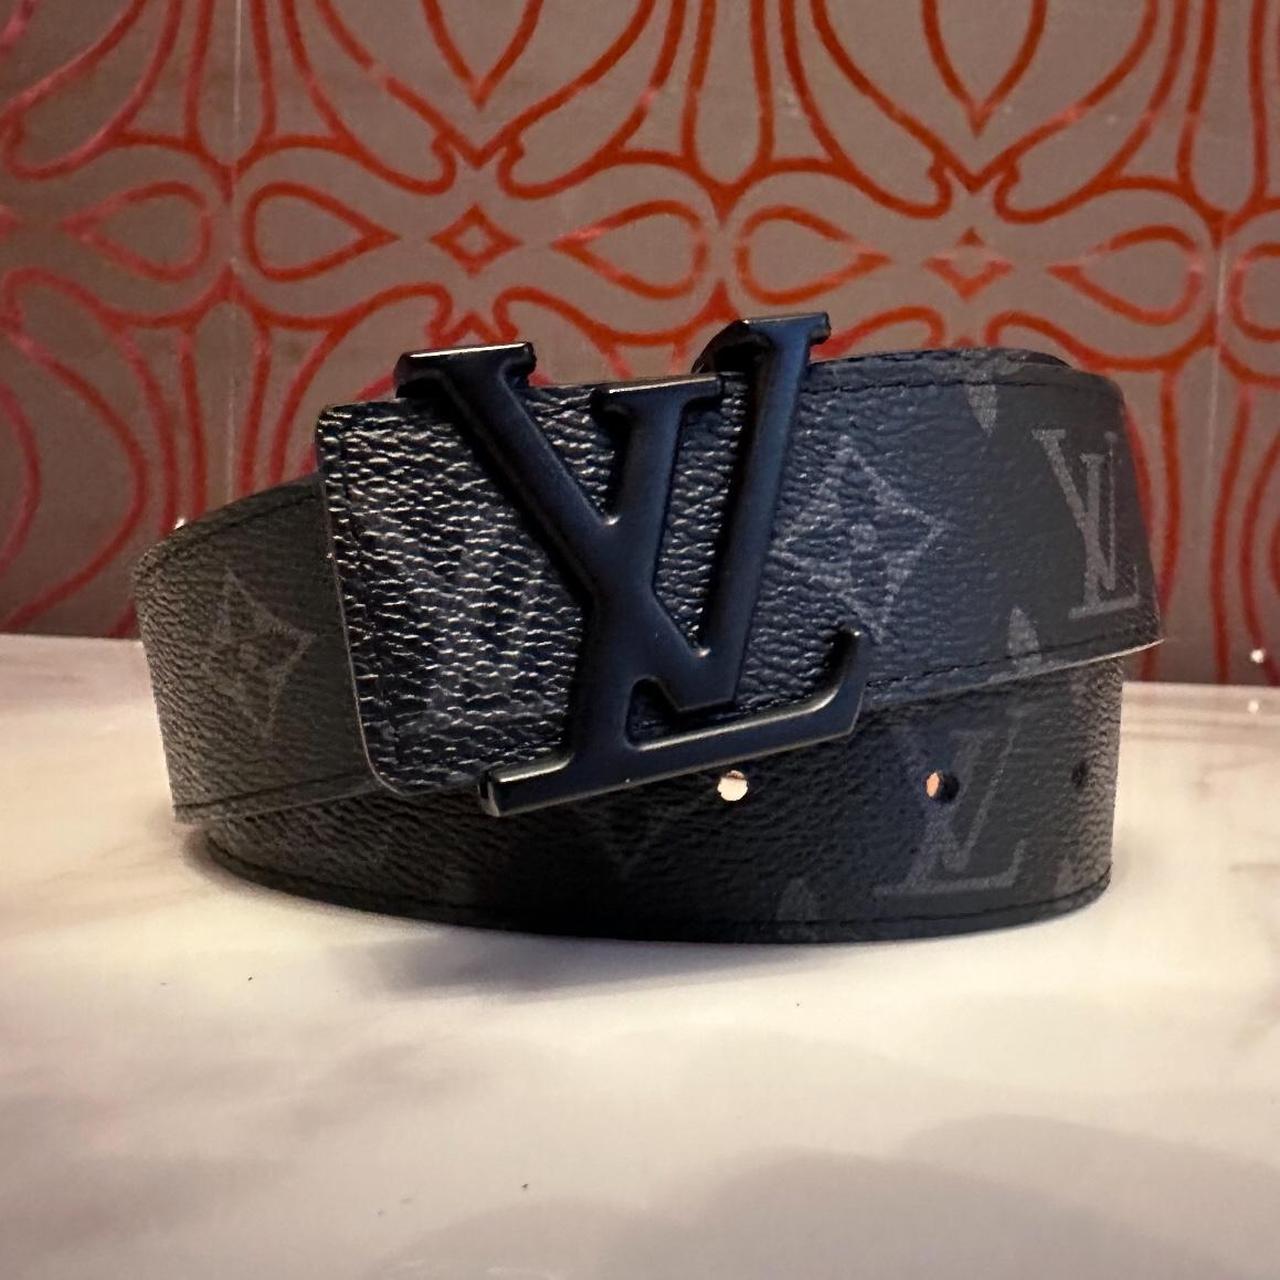 LV belt 🤩 LV patterns All over ️ top quality 🥇 - Depop